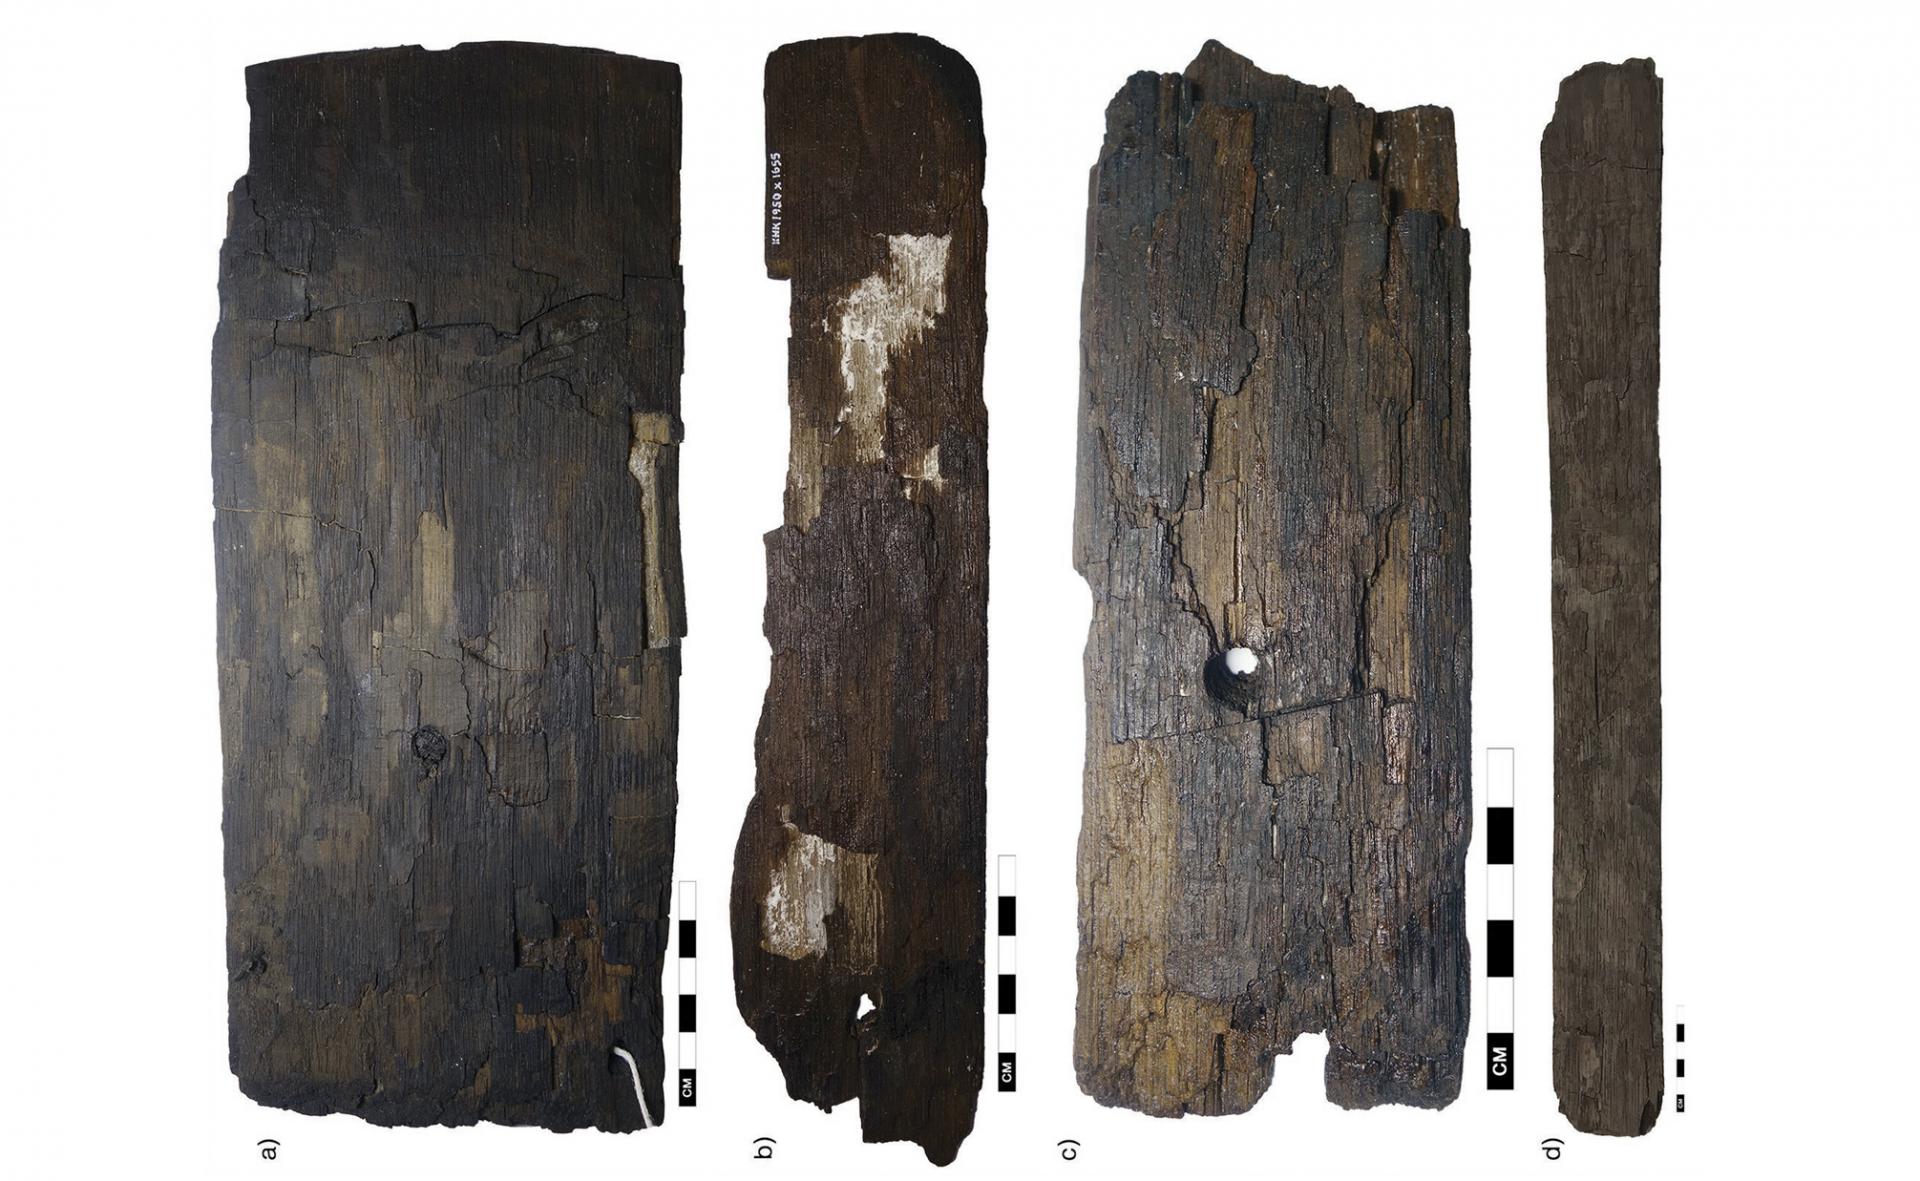 Groenland - Échantillons de planches de chêne probablement importées qui ont été découvertes dans les colonies de l'île - Photo: Lísabet Guðmundsdóttir